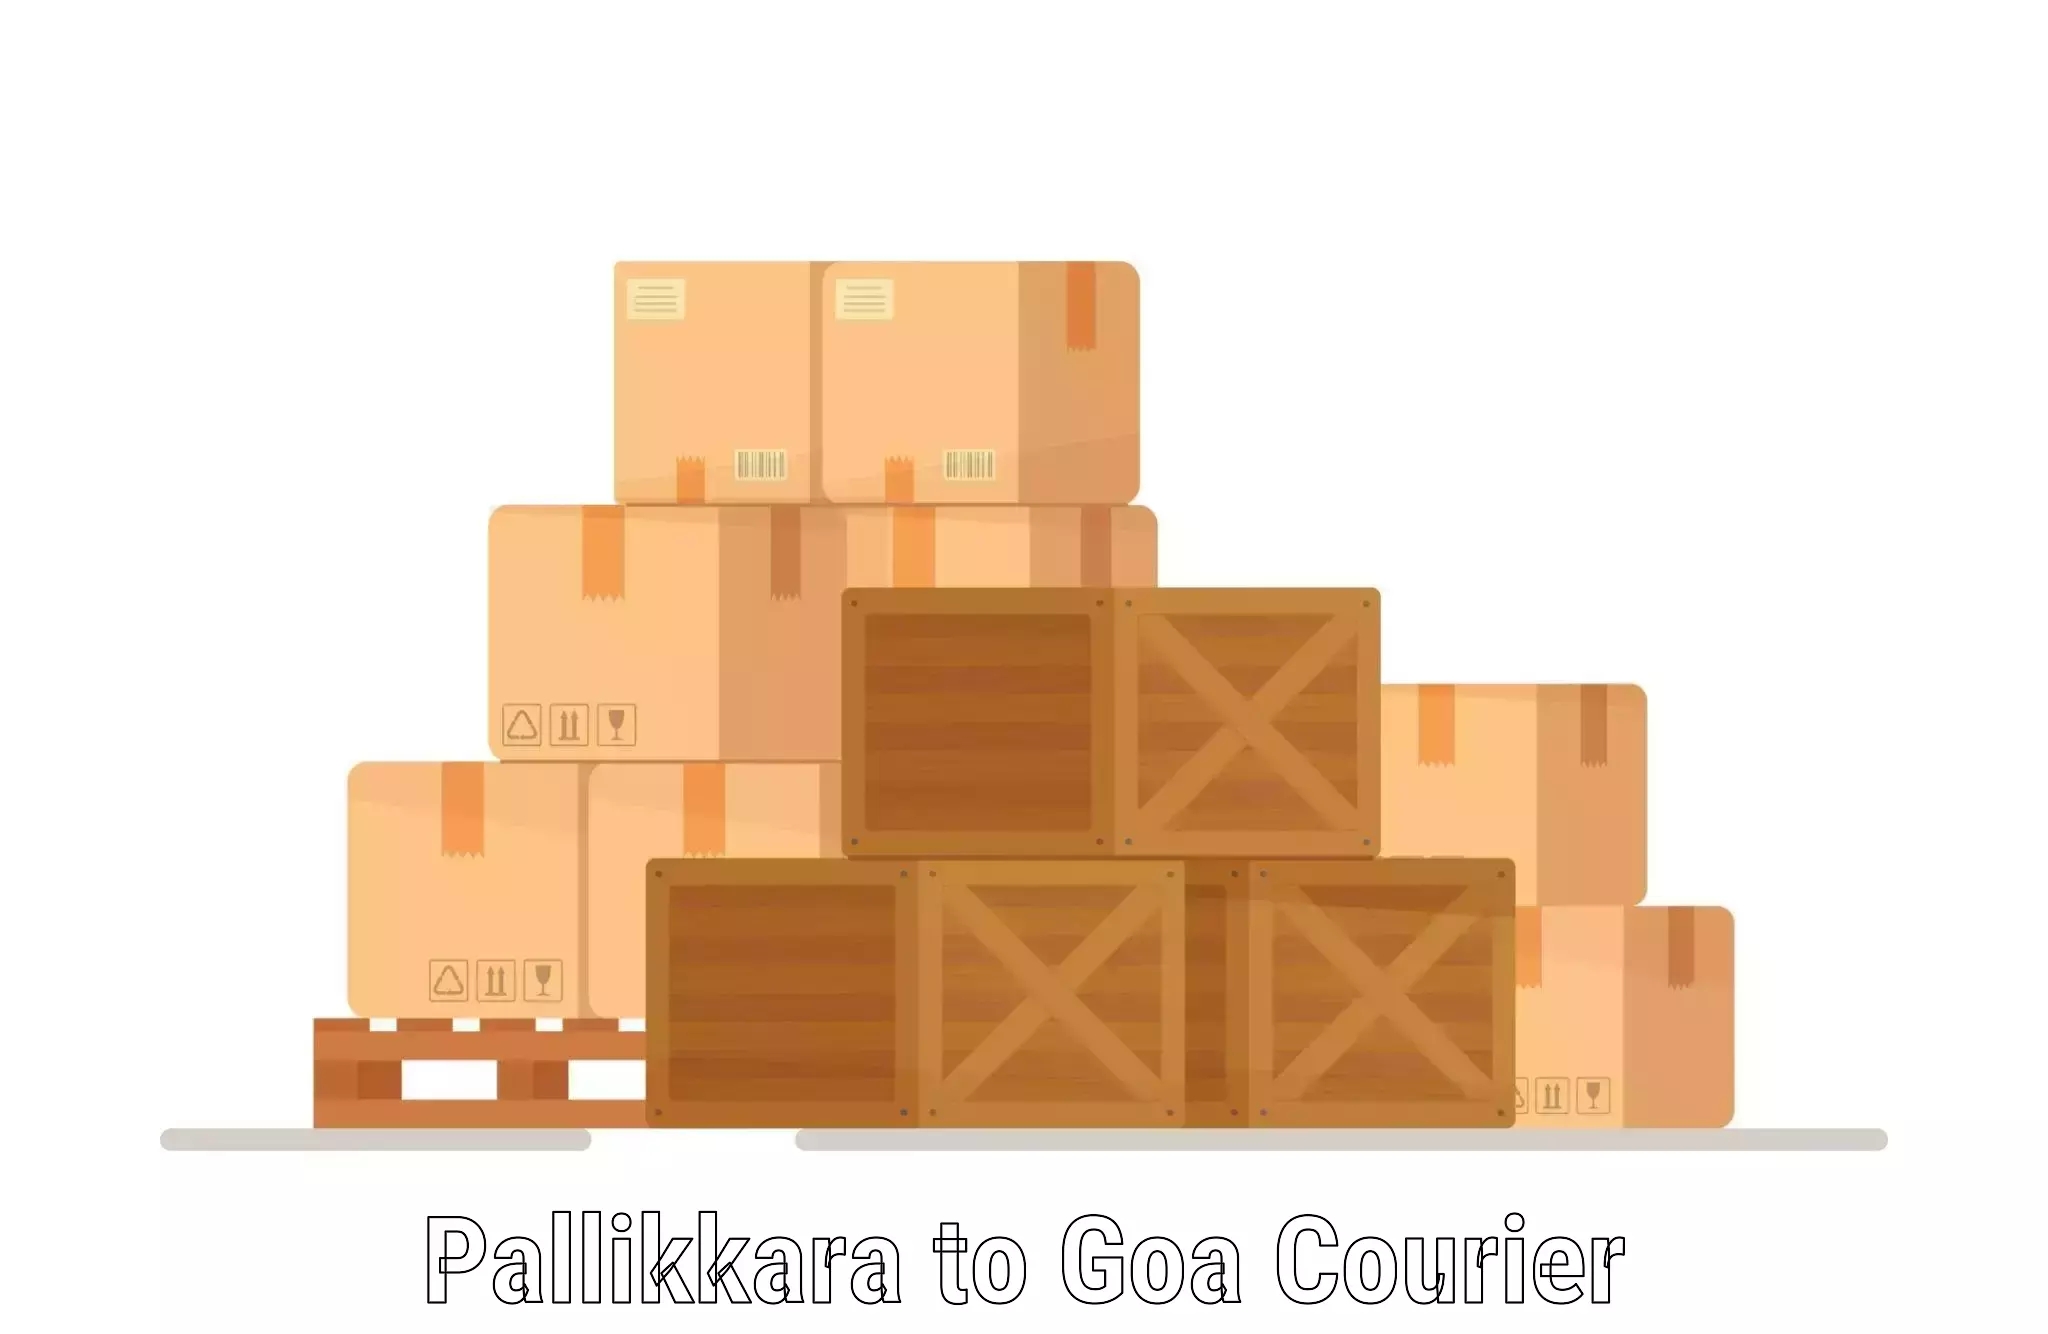 Door-to-door freight service Pallikkara to Goa University